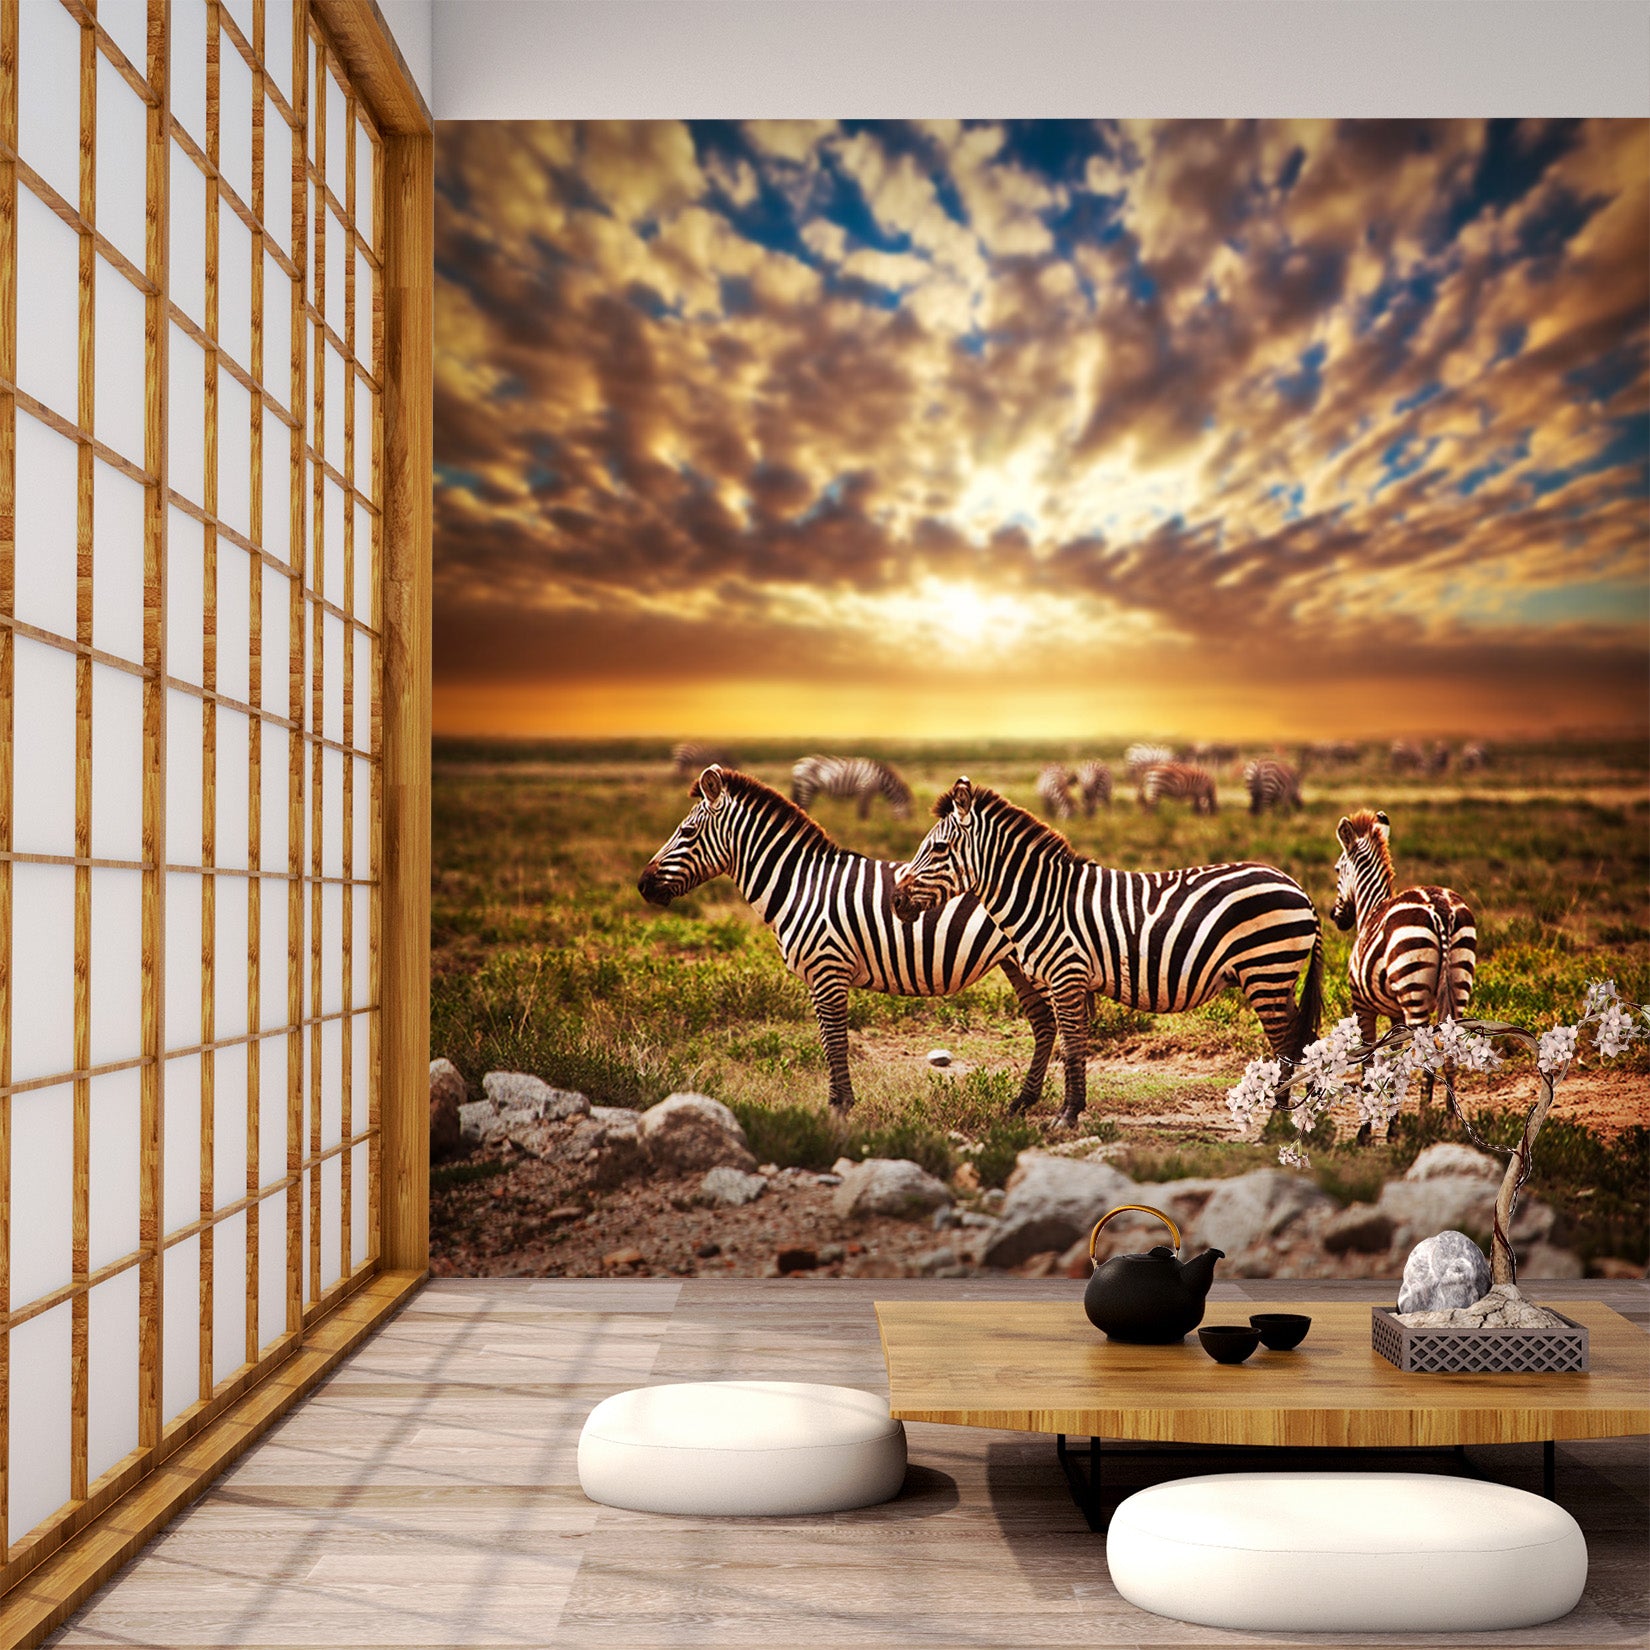 3D Sunset Zebra 280 Wall Murals